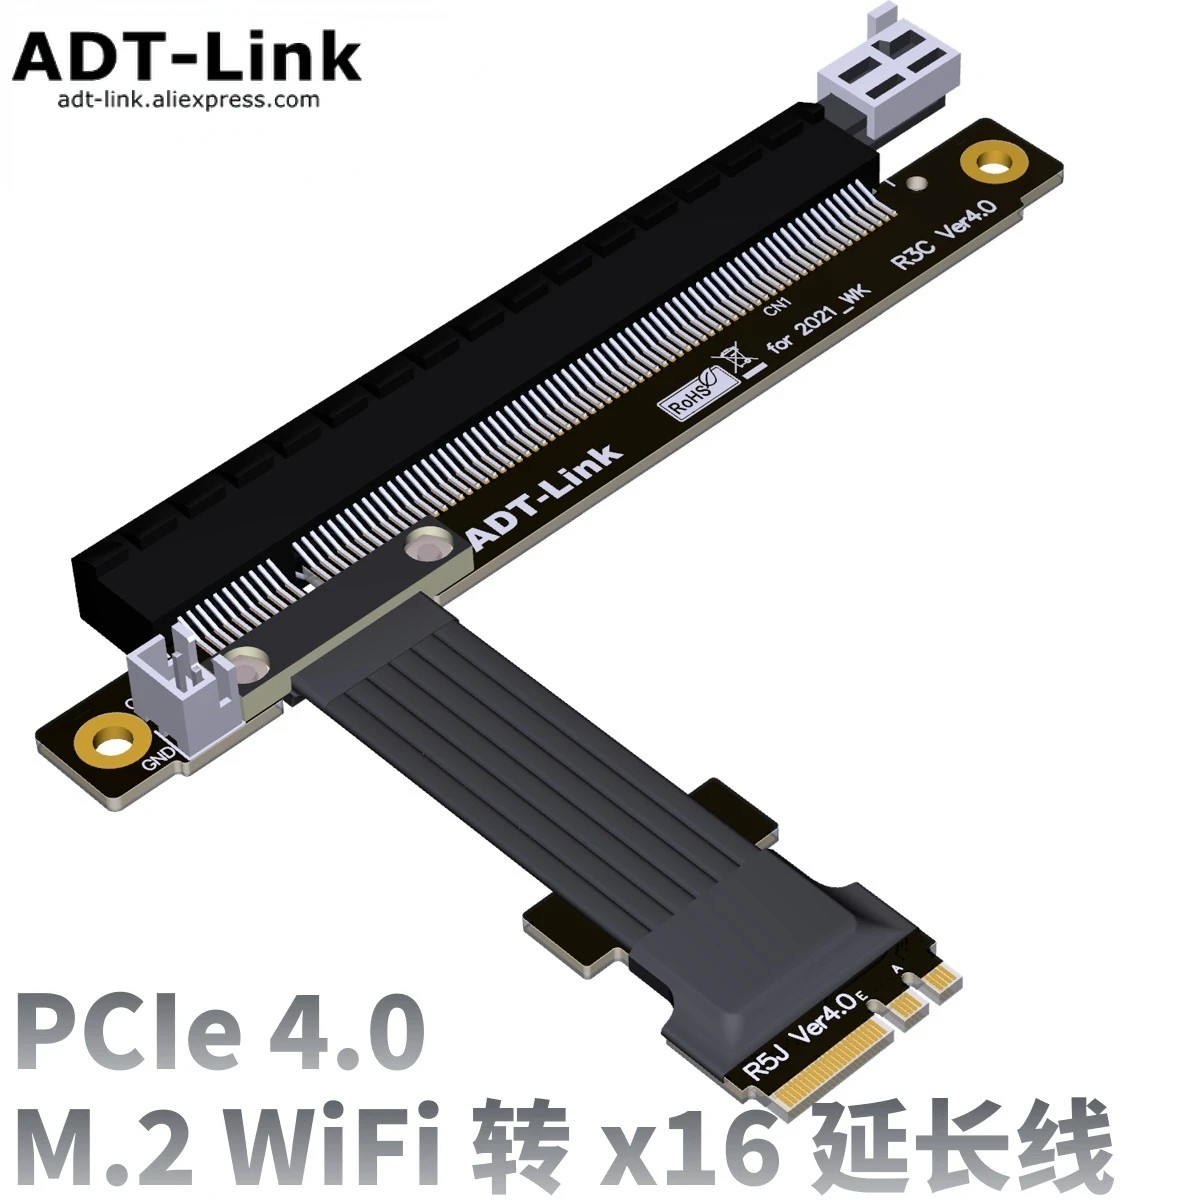 

PCIe4.0 M.2 WiFi ключ A.E интерфейс к x16 удлинитель высокоскоростной Gen4 M2 WiFi AEkey 16x слот SSD переходник адаптер для GPU